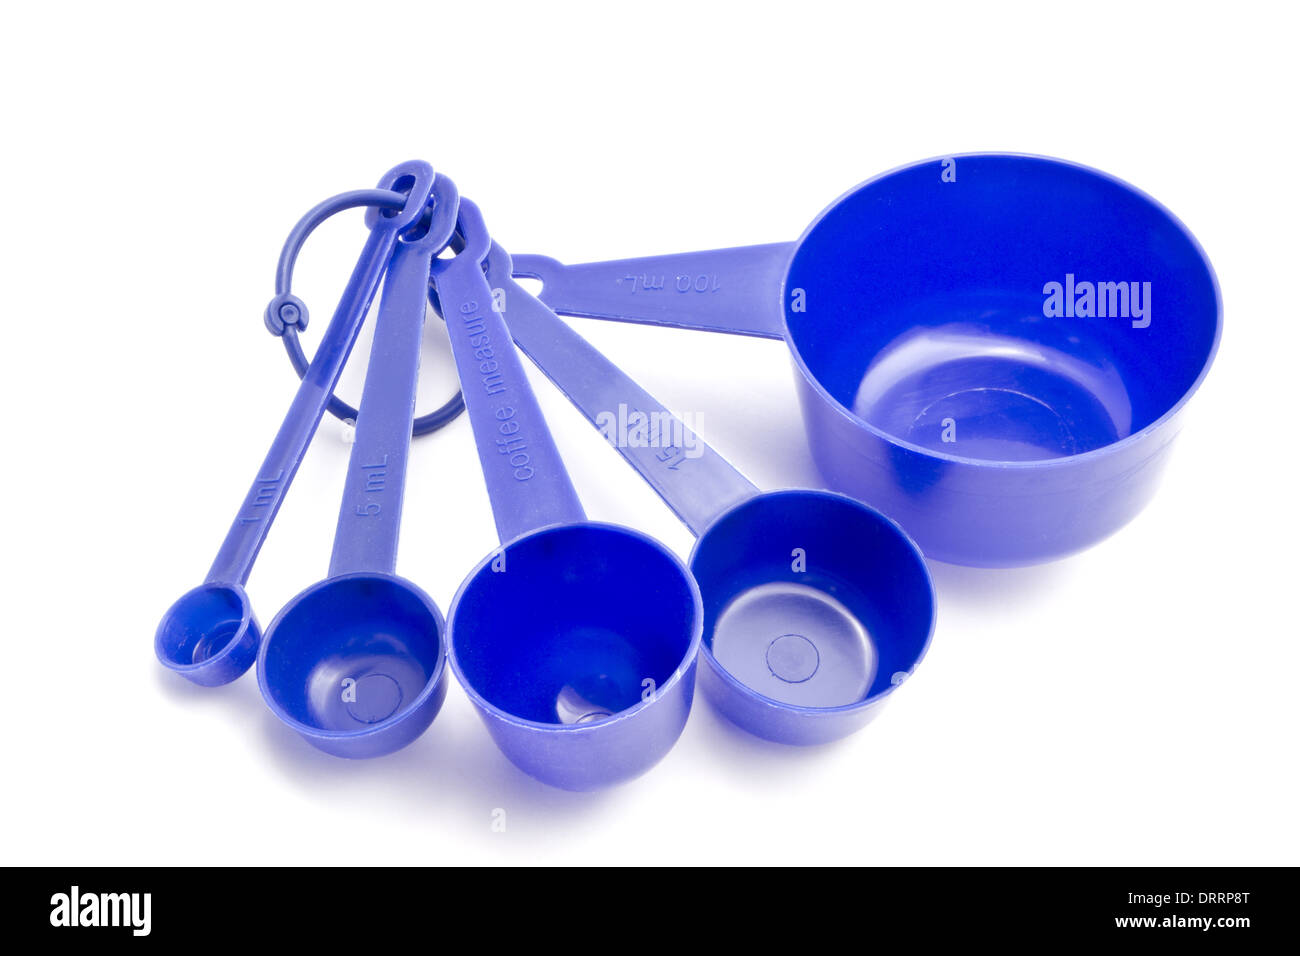 https://c8.alamy.com/comp/DRRP8T/blue-measuring-spoons-DRRP8T.jpg